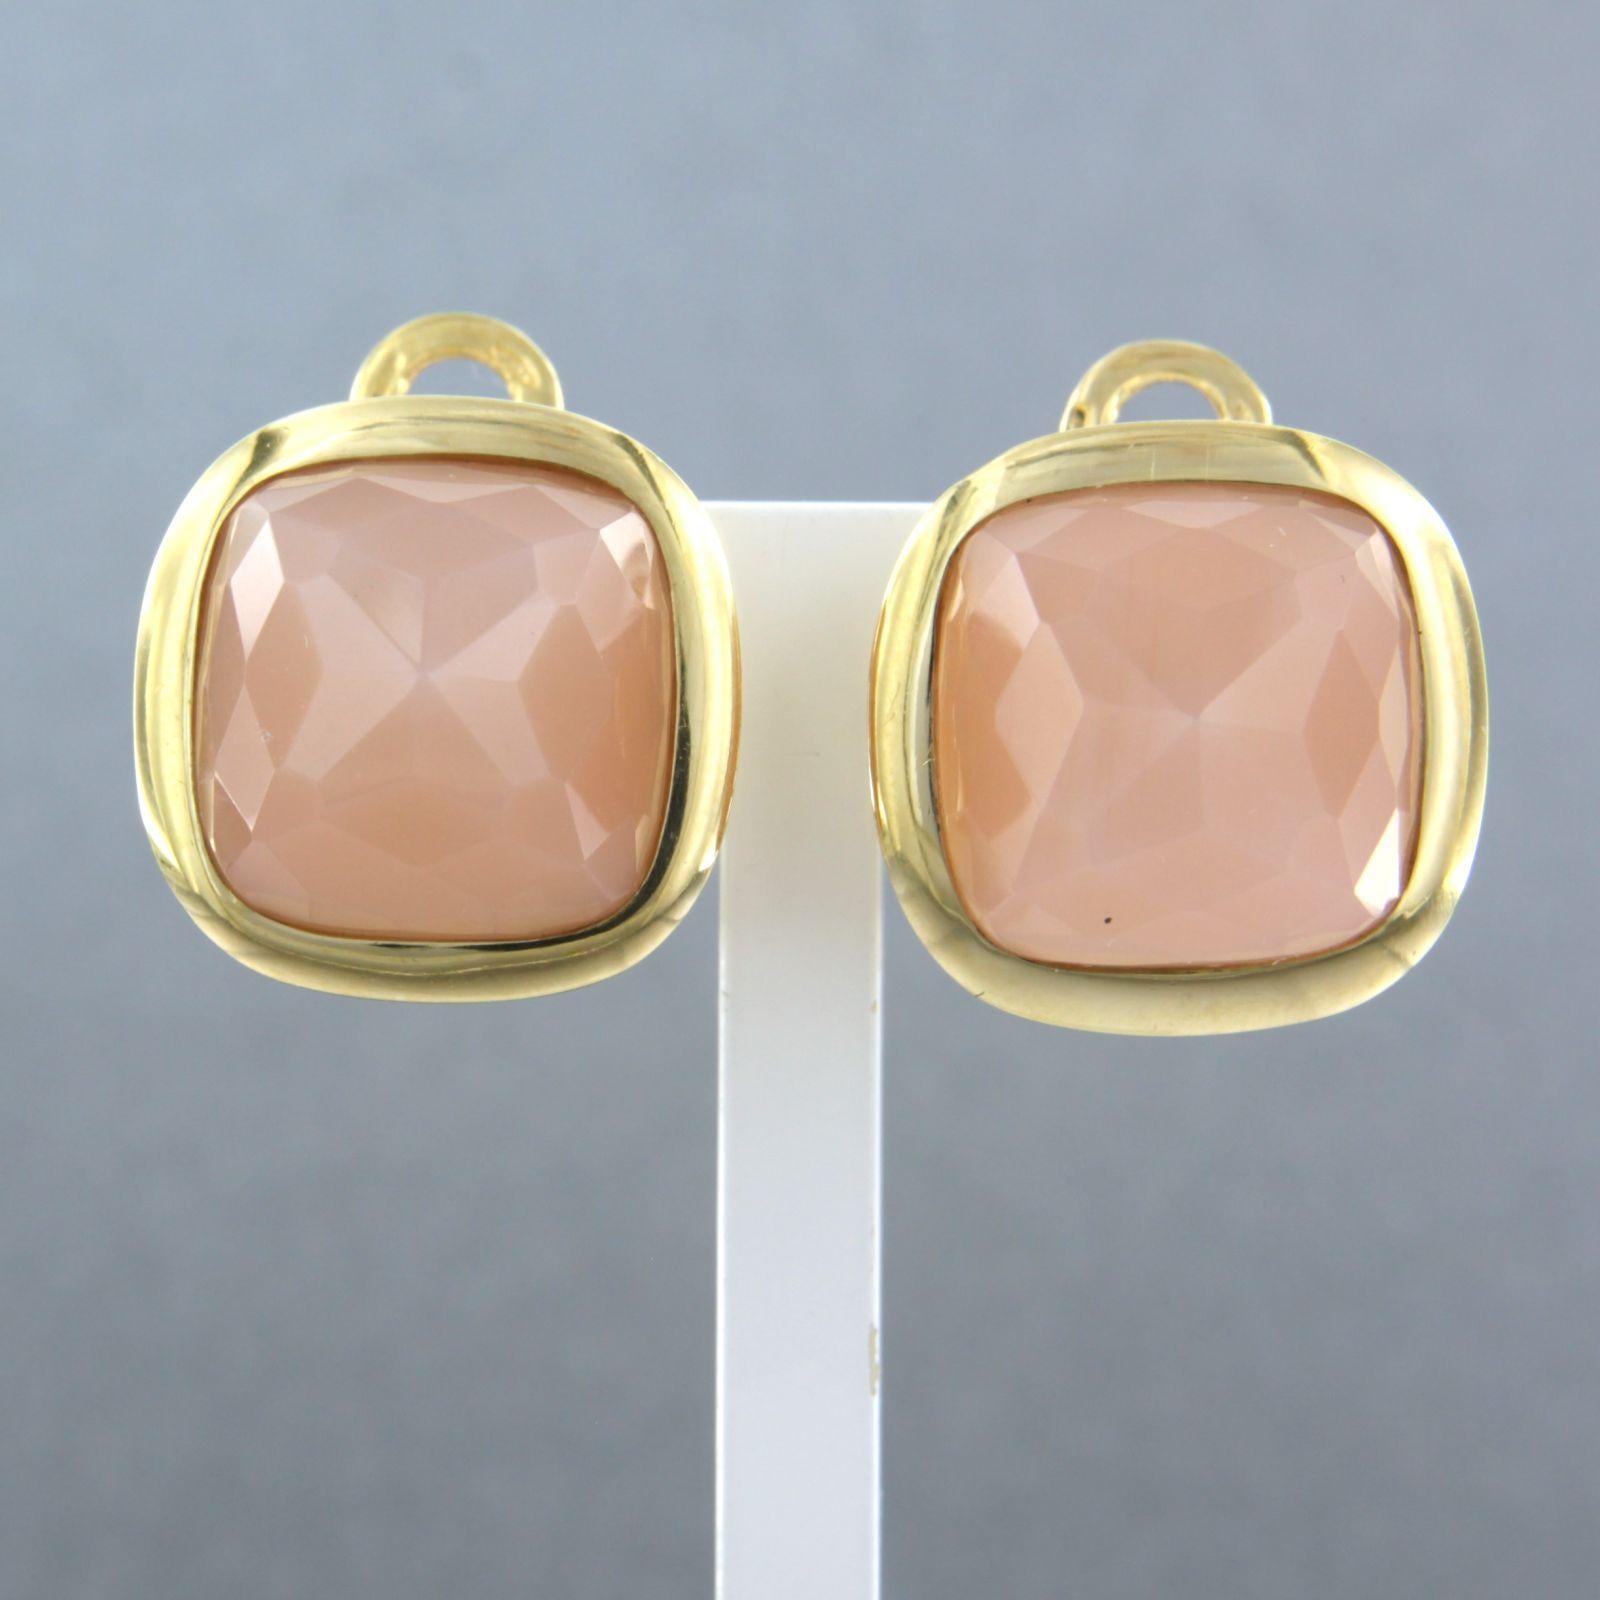 Clips d'oreilles en or jaune 18k sertis de quartz rose - taille 1,8 cm x 1,8 cm

description détaillée

la taille du clip d'oreille est de 1,8 cm de long sur 1,8 cm de large

poids 17,5 grammes

occupé par

- 2 x 1,4 cm x 1,4 cm quartz rose carré